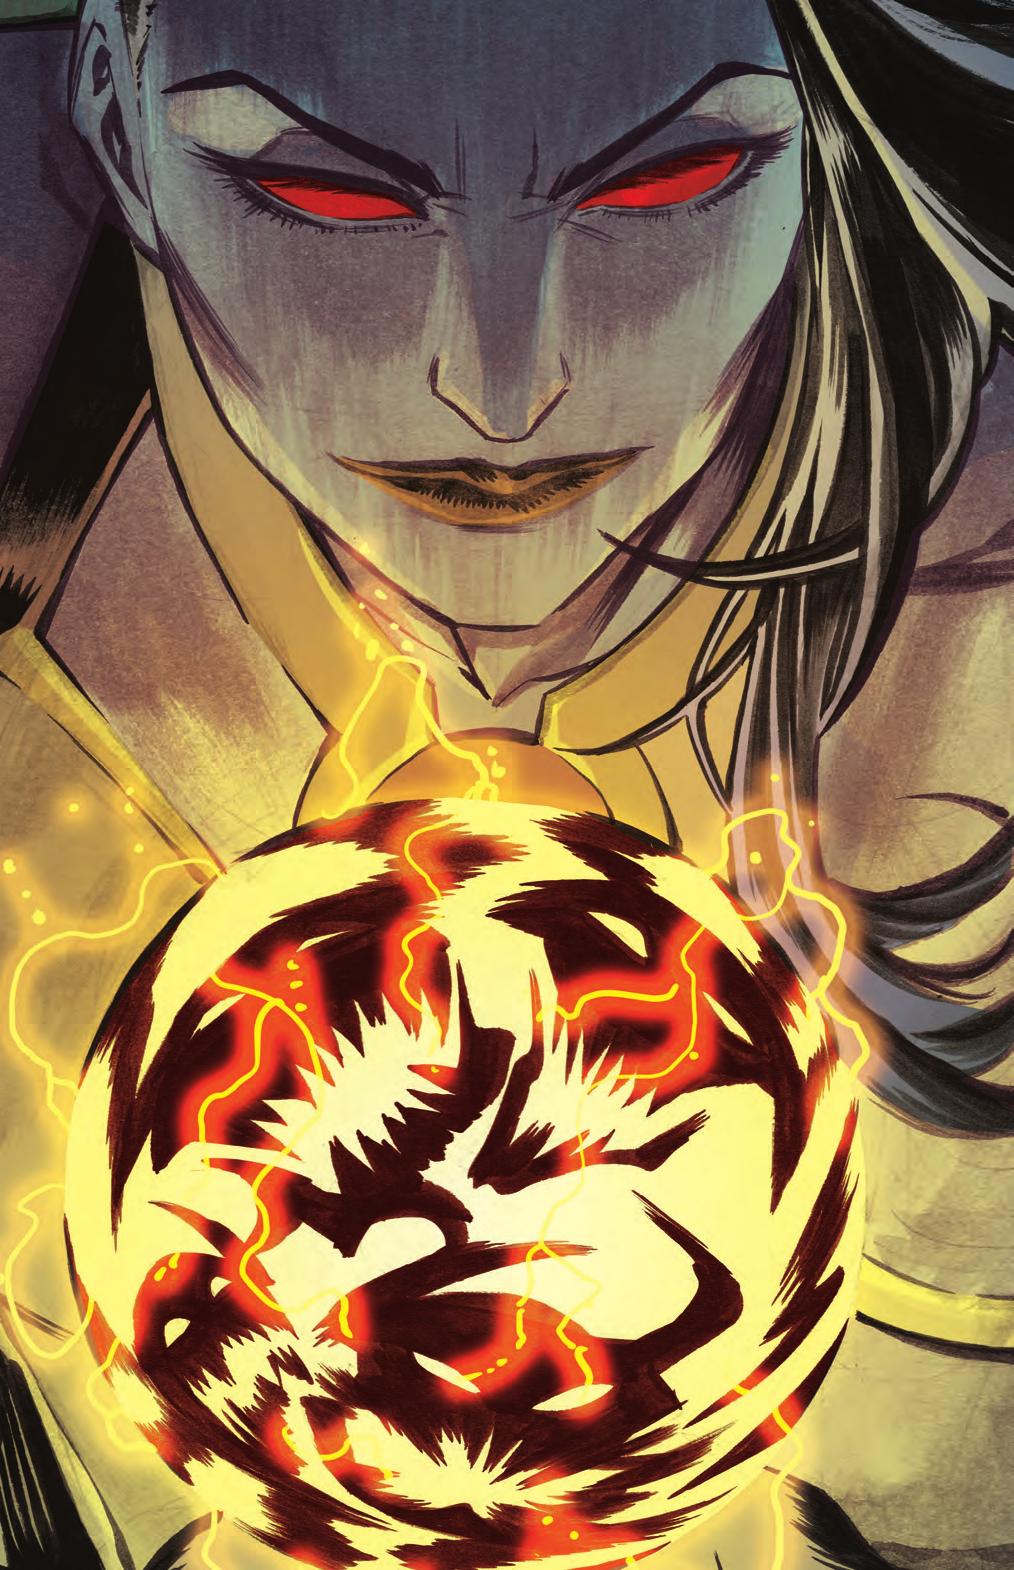 Yapı Kredi Yayınları - 5038 Justice League Cilt 8: Darkseid Savaşı Bölüm 2 Özgün adı: Justice League Volume 8: Darkseid War Part 2 Çeviren: Anıl Bilge Editör: Hazel Bilgen Grafik uygulama: Hasan